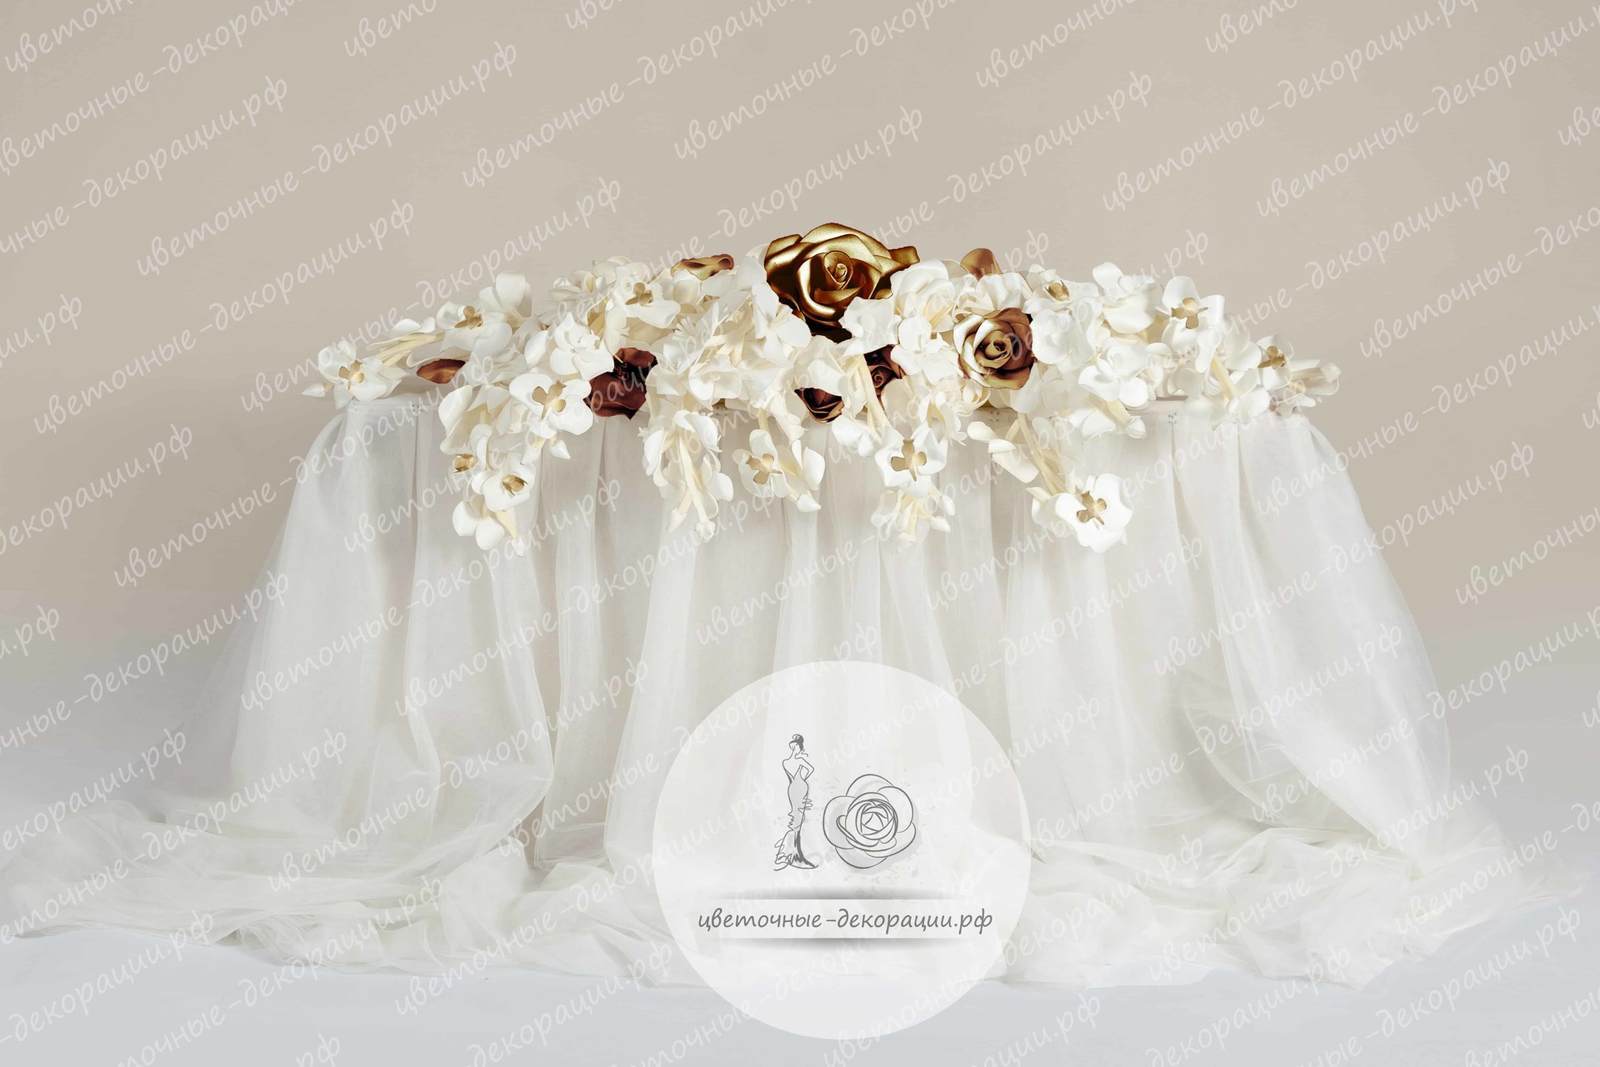 Оформление стола жениха и невесты в белых и золотых цветах